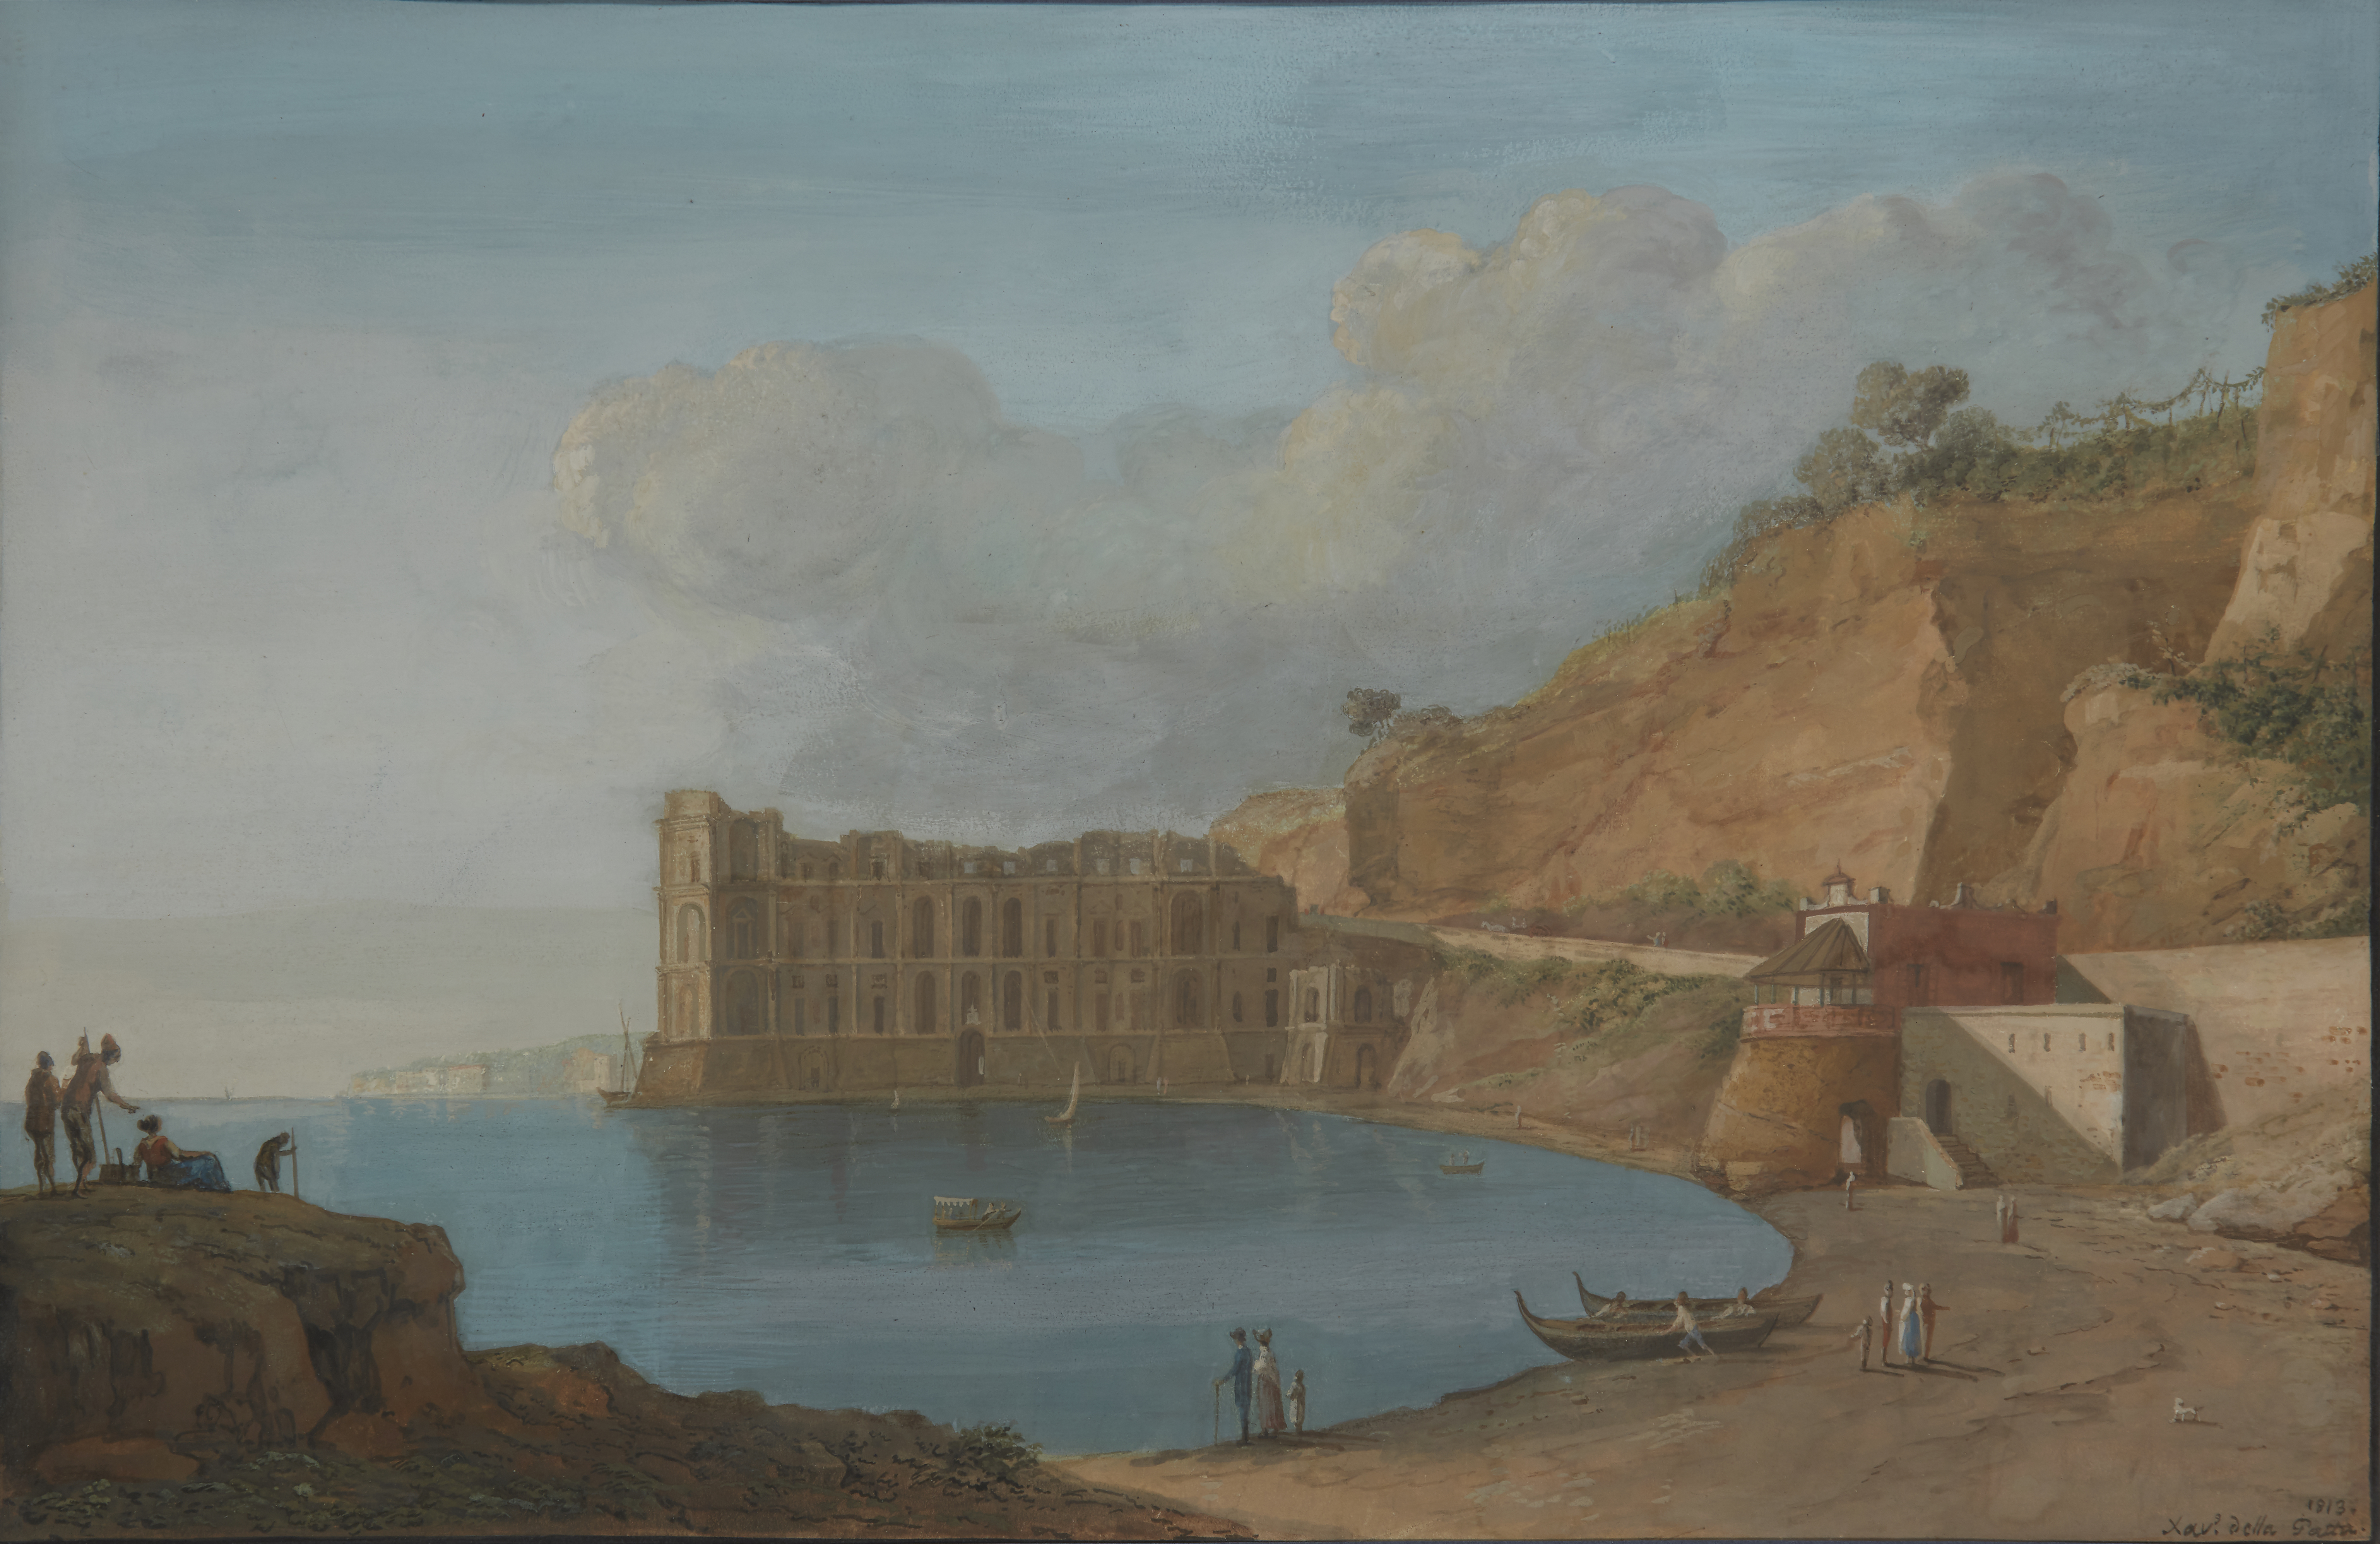 Saverio della Gatta,  Italian 1777-1829-  View of the Bay of Naples with Palazzo Donn'Anna and C...